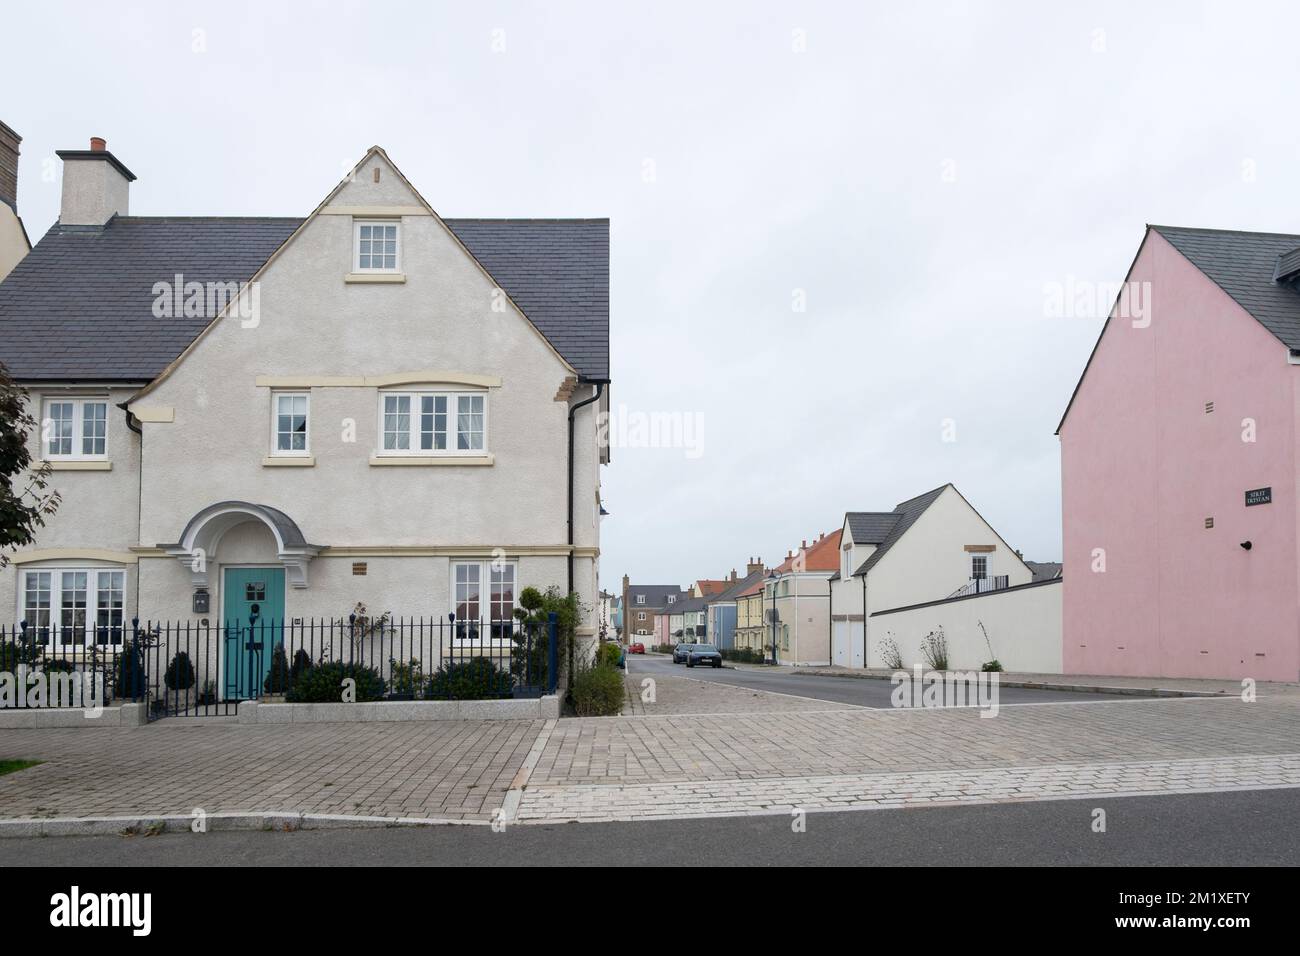 Ein Haus an der Ecke von Stret Trystan, eine Straße in Nansledan, ein Bauwerk des Herzogtums Cornwall in Newquay, Südwestengland, Großbritannien Stockfoto